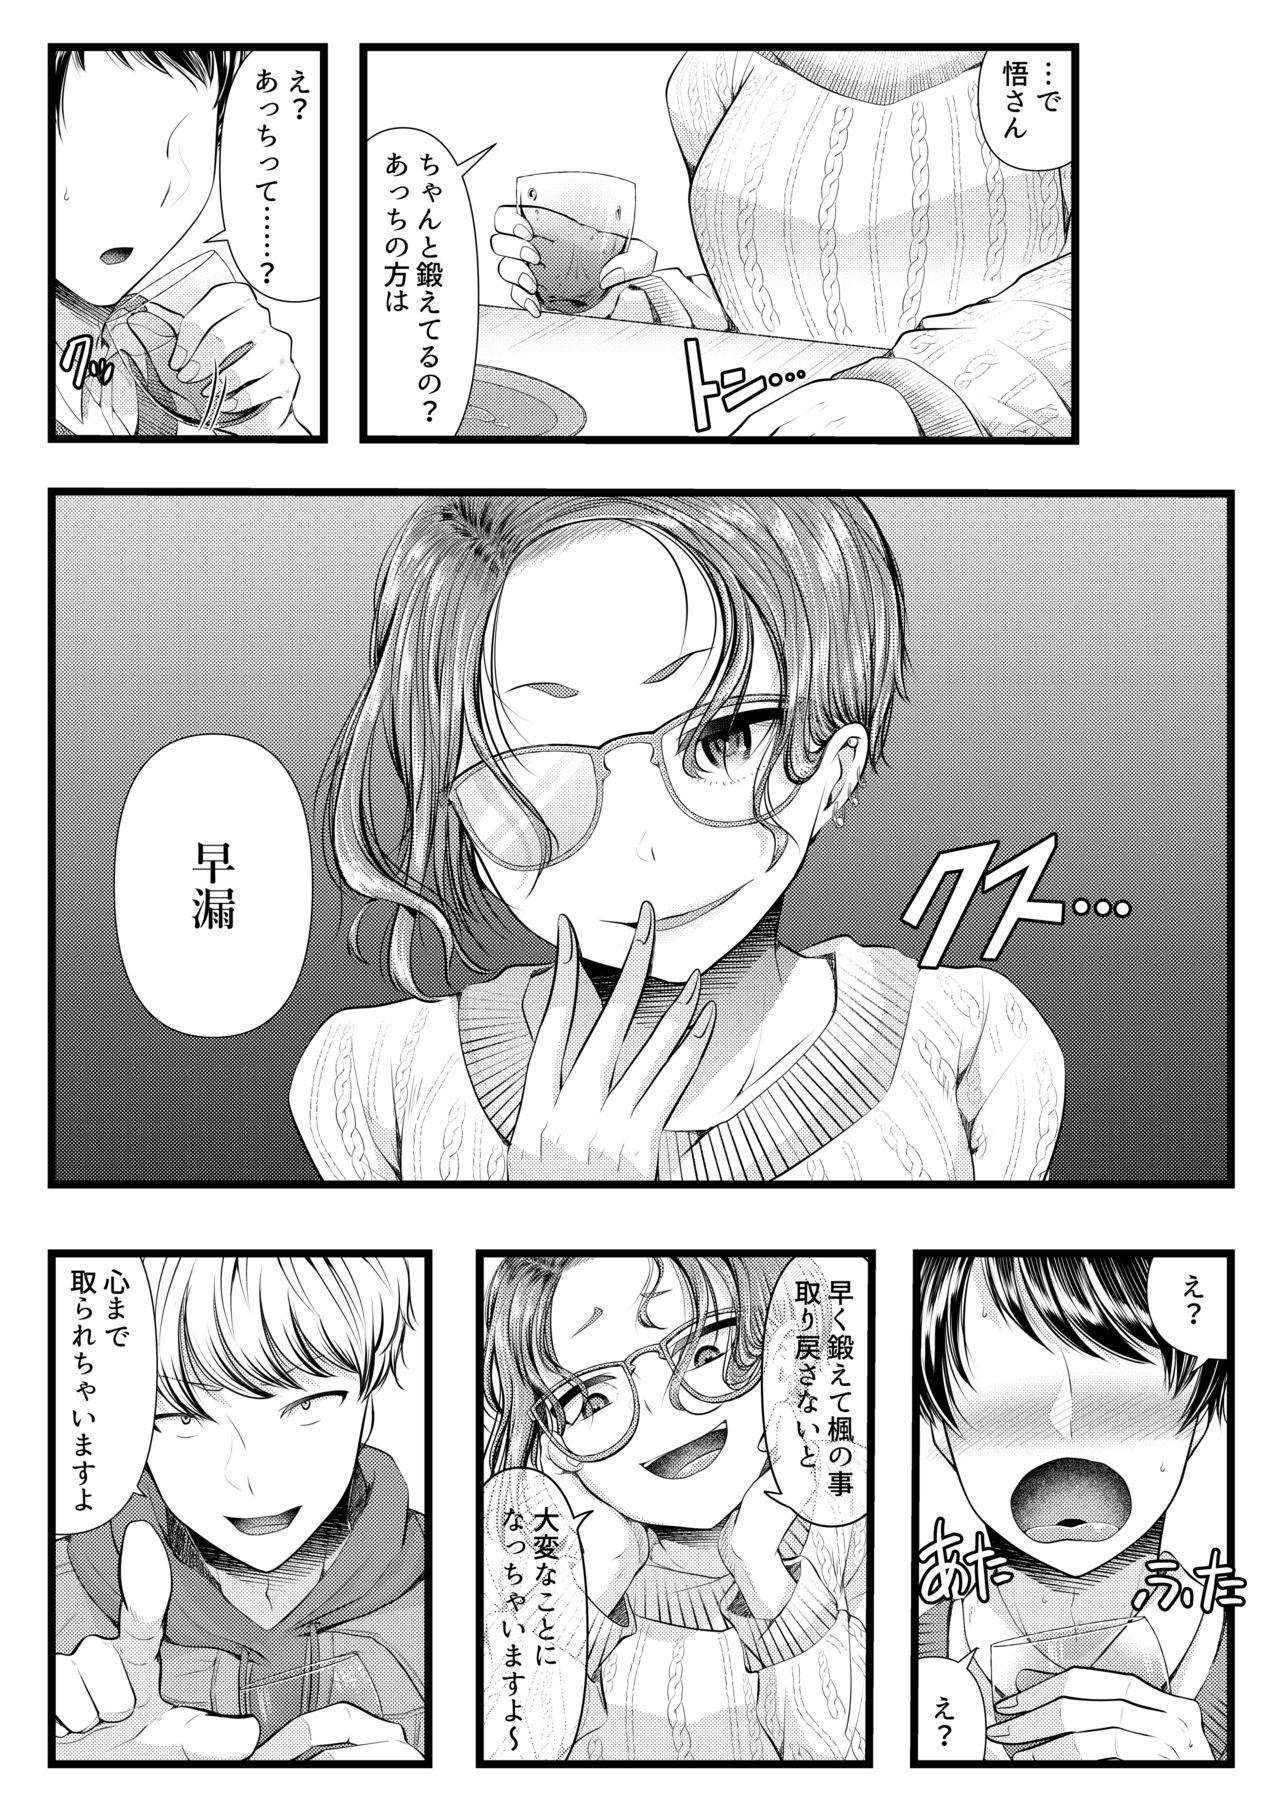 Rola Hajimete no Netorare Maso-ka Choukyou 4 - Original Gays - Page 4